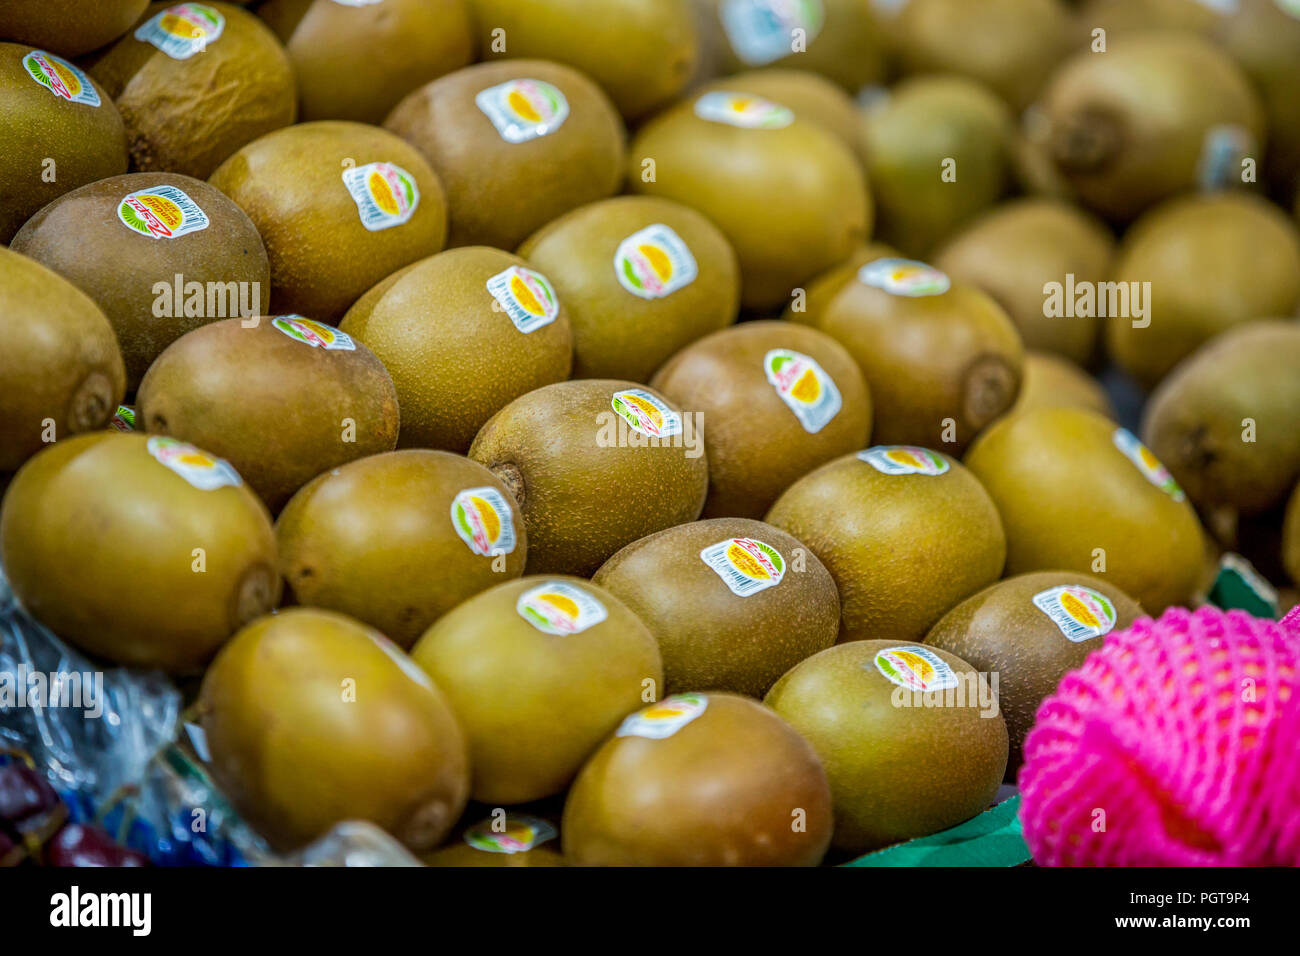 kiwifruit, Kiwi fruits on display in market Stock Photo